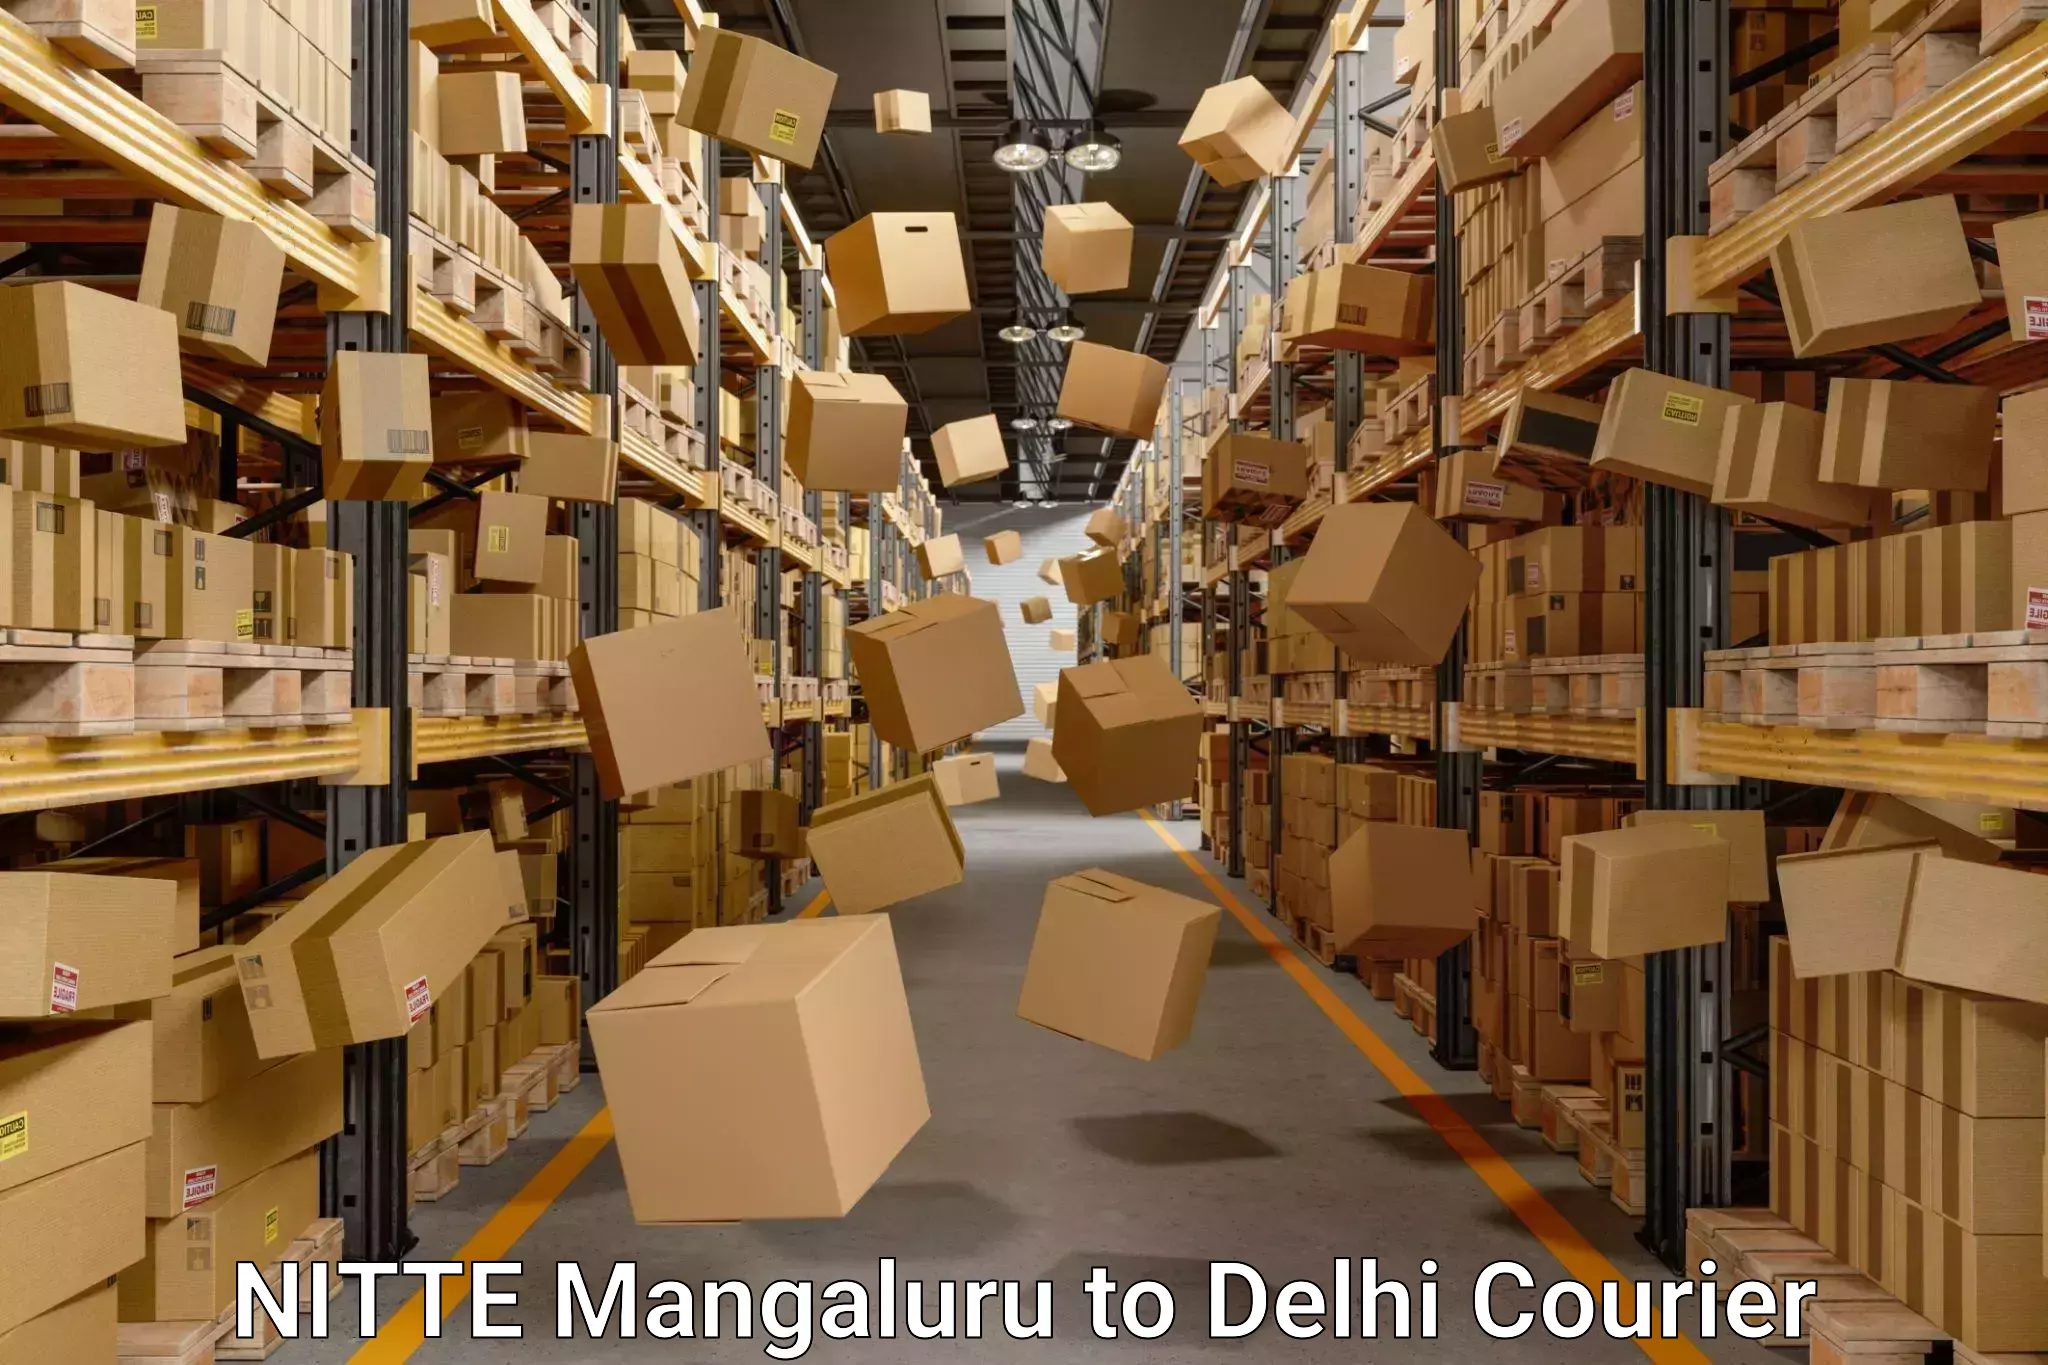 Home moving experts NITTE Mangaluru to East Delhi